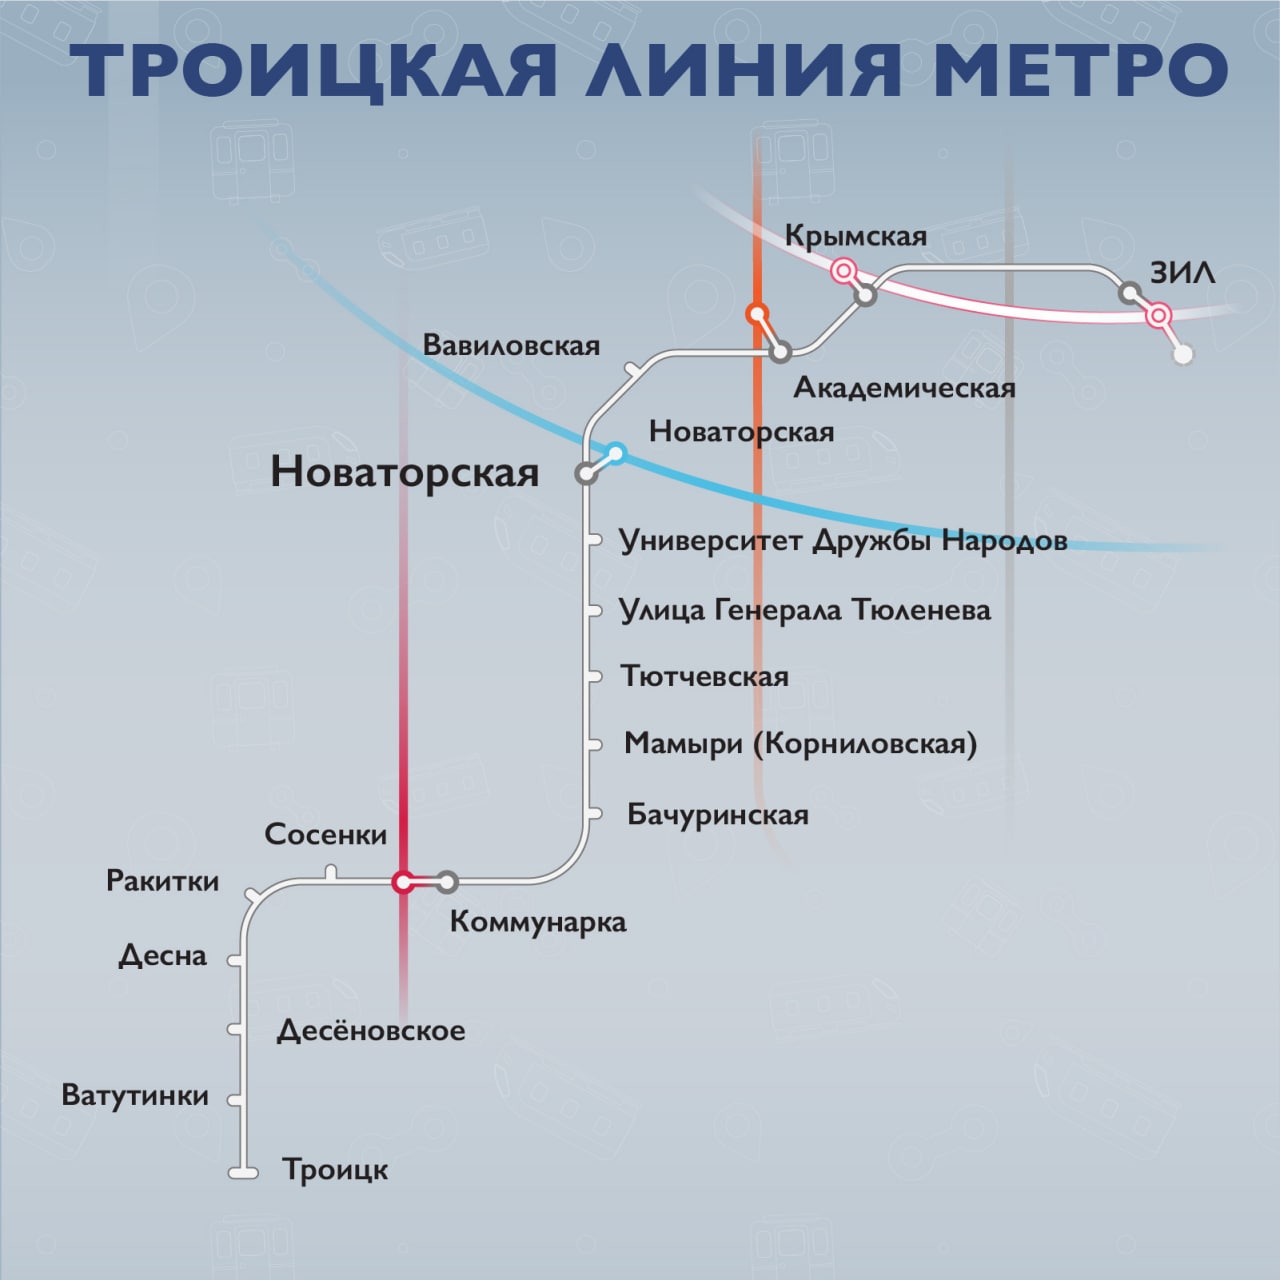 Троицкую линию метро планируют запустить в конце 2024 года